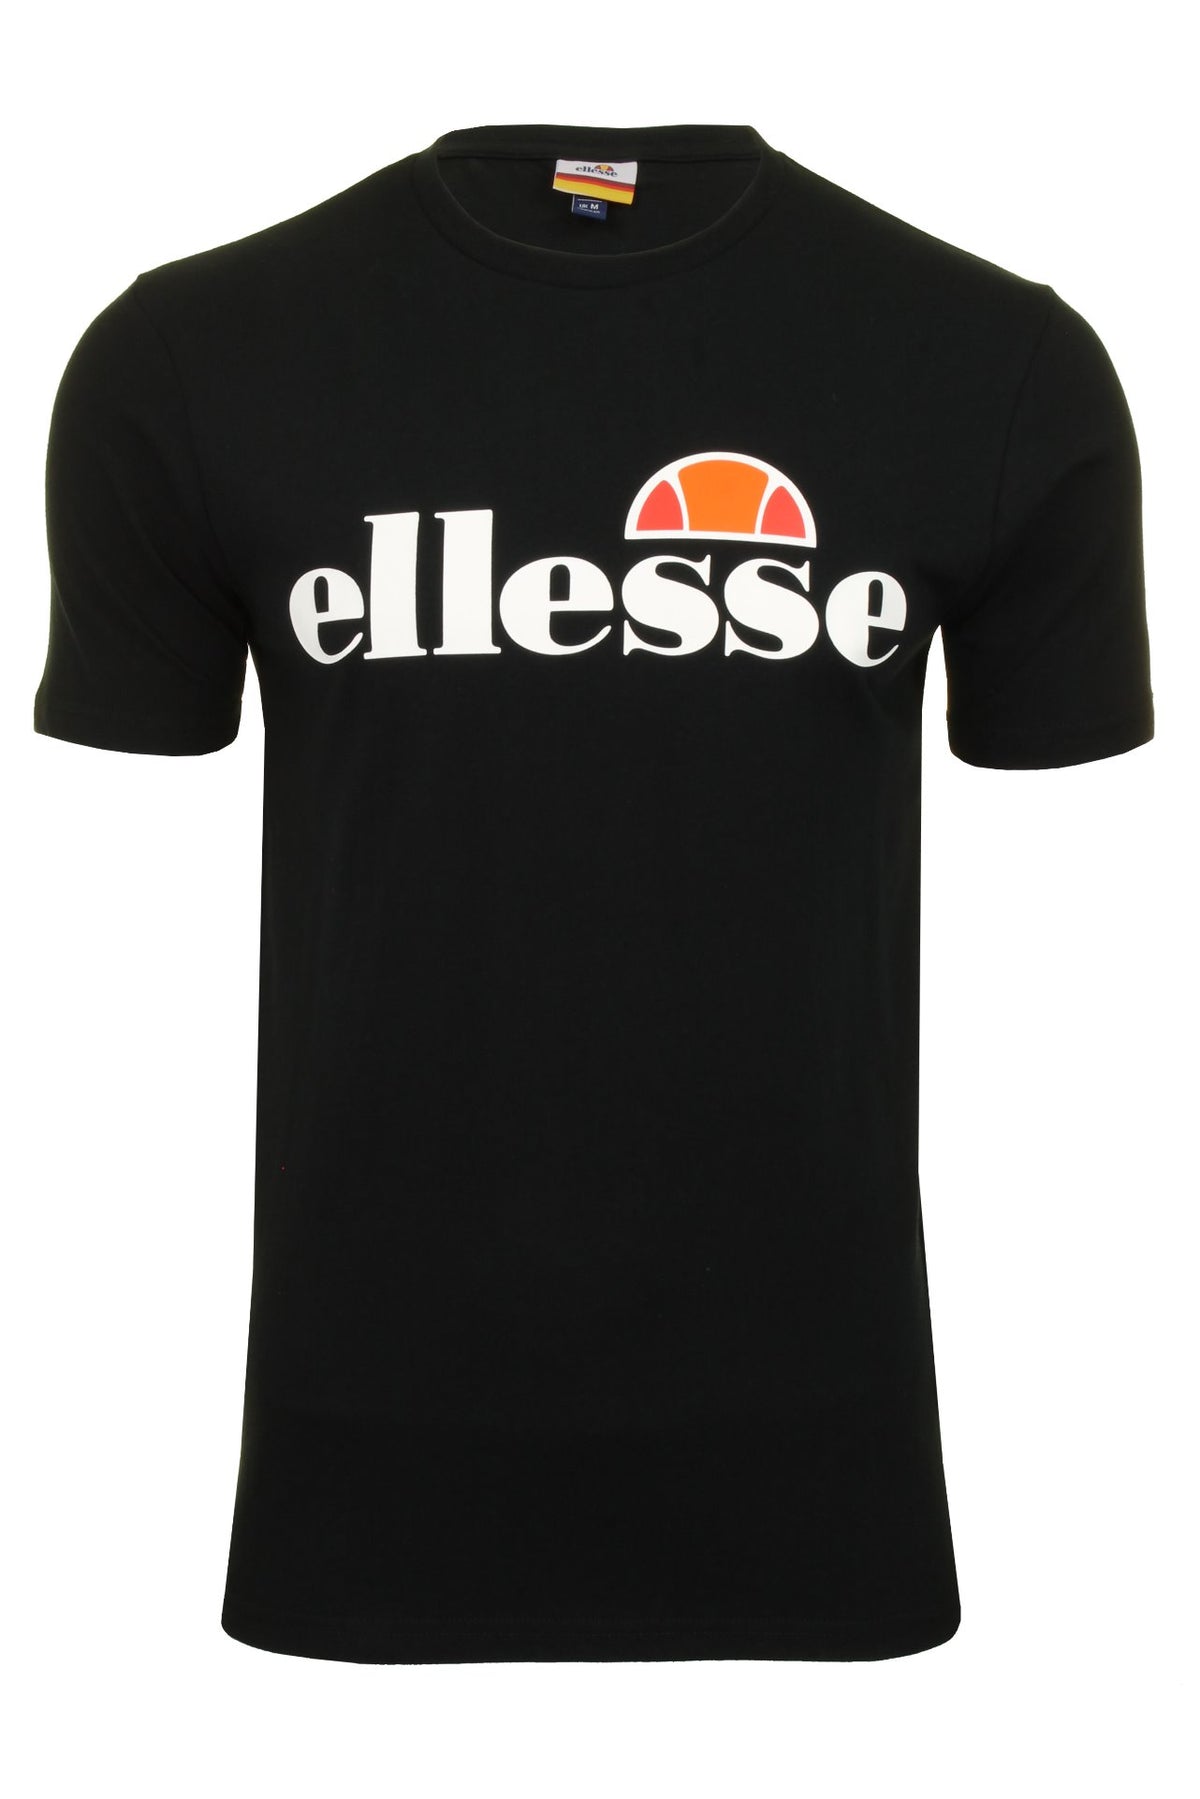 Ellesse Mens Logo Front Crew Neck T-Shirt 'PRADO' - Short Sleeved, 01, Shc07405, Black